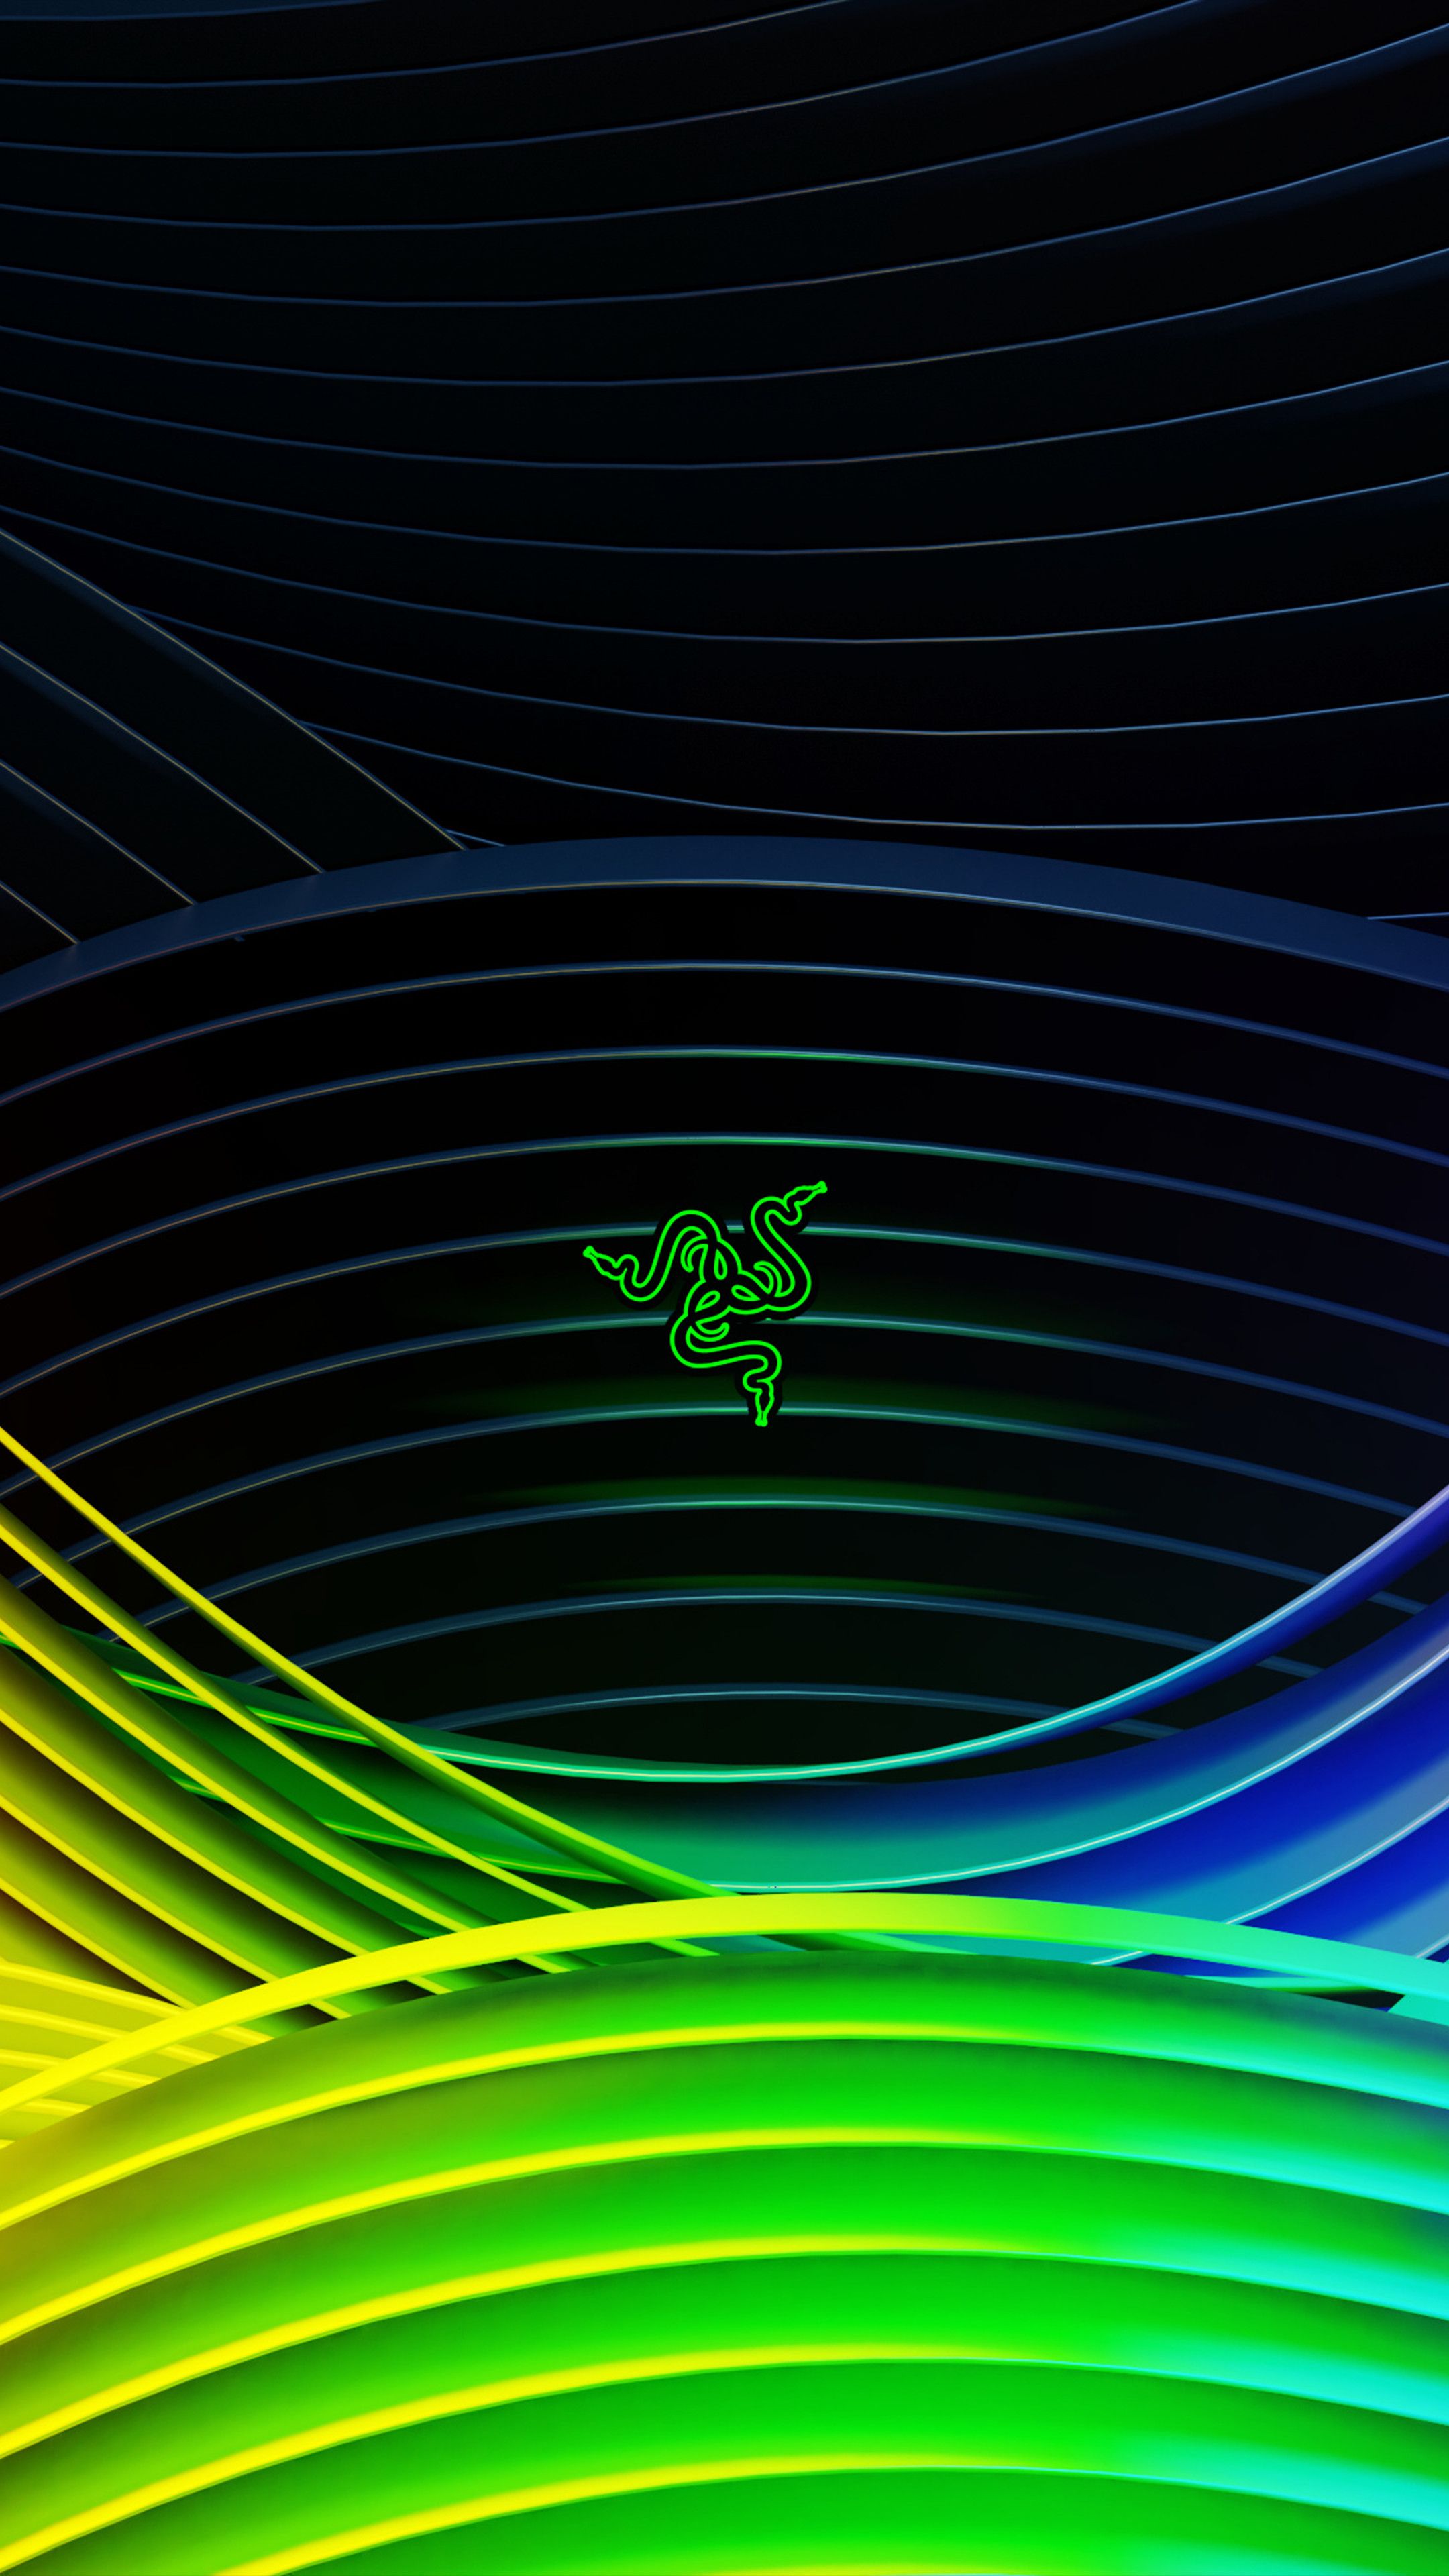 Razer Logo Colorful Wave 4K Wallpaper. Wallpaper, Phone wallpaper, Black phone wallpaper